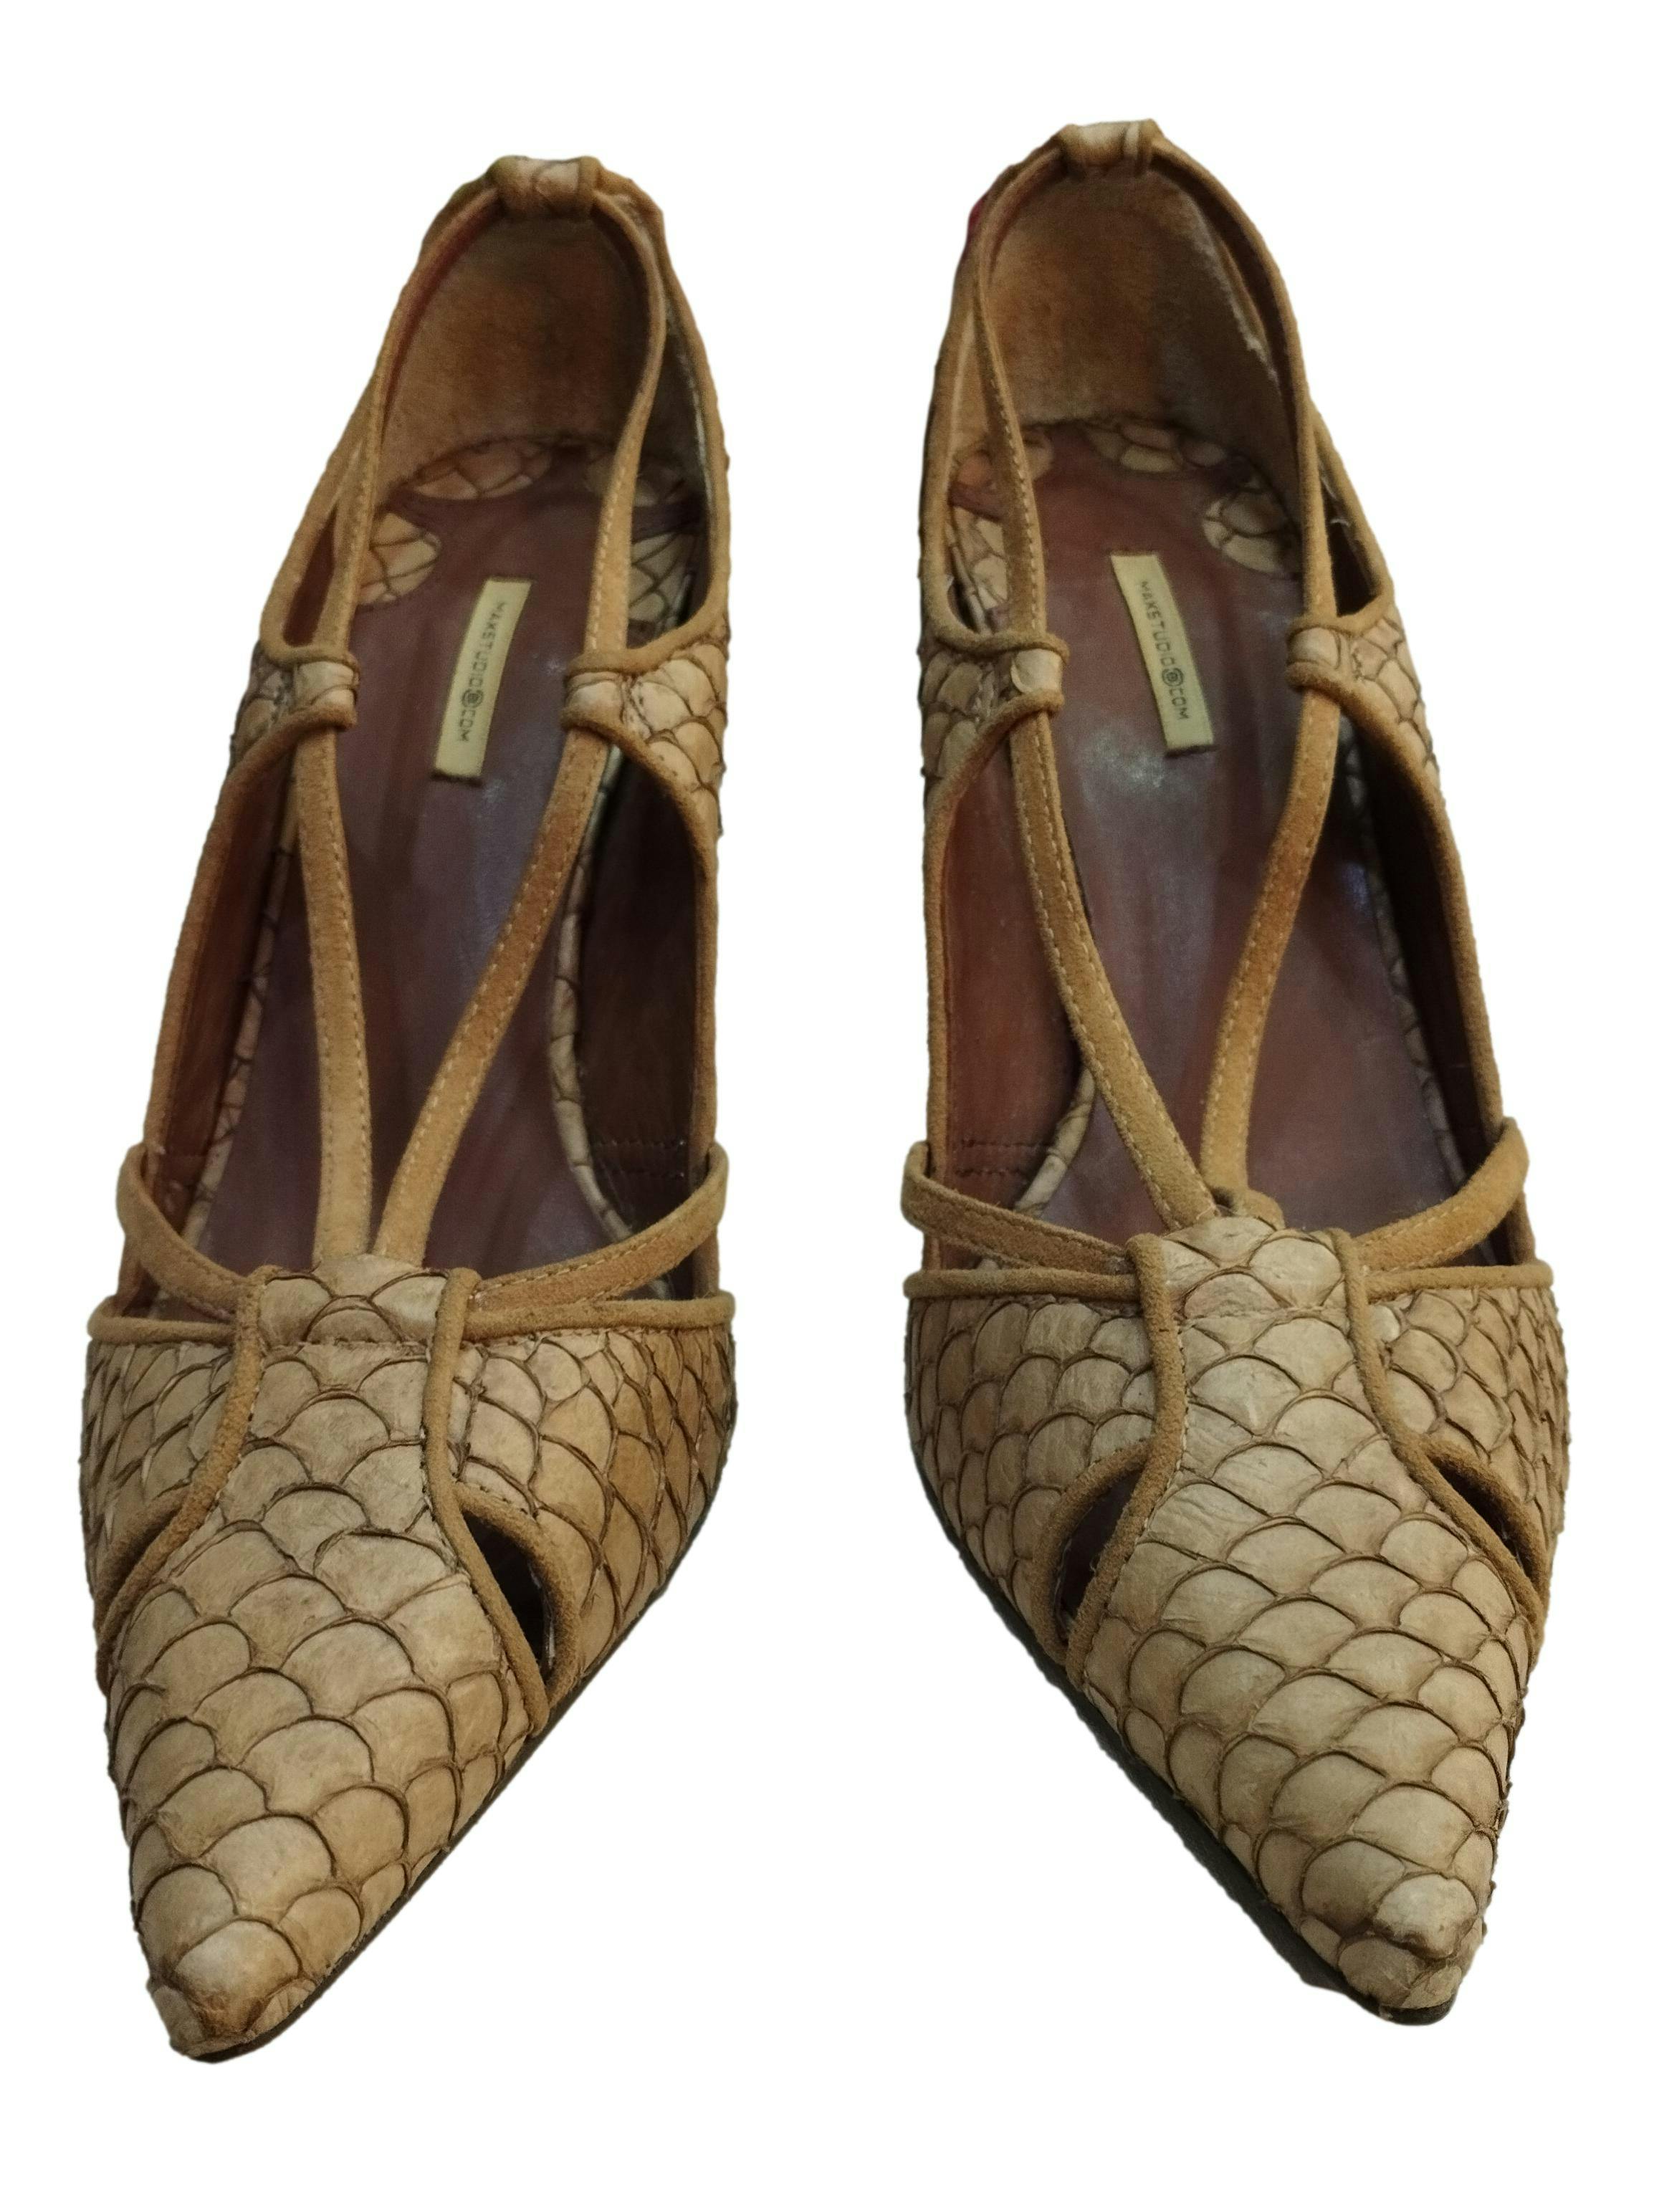 Zapatos Maxstudio marrones, textura con relieve, taco de 7 cm. Estado:8/10